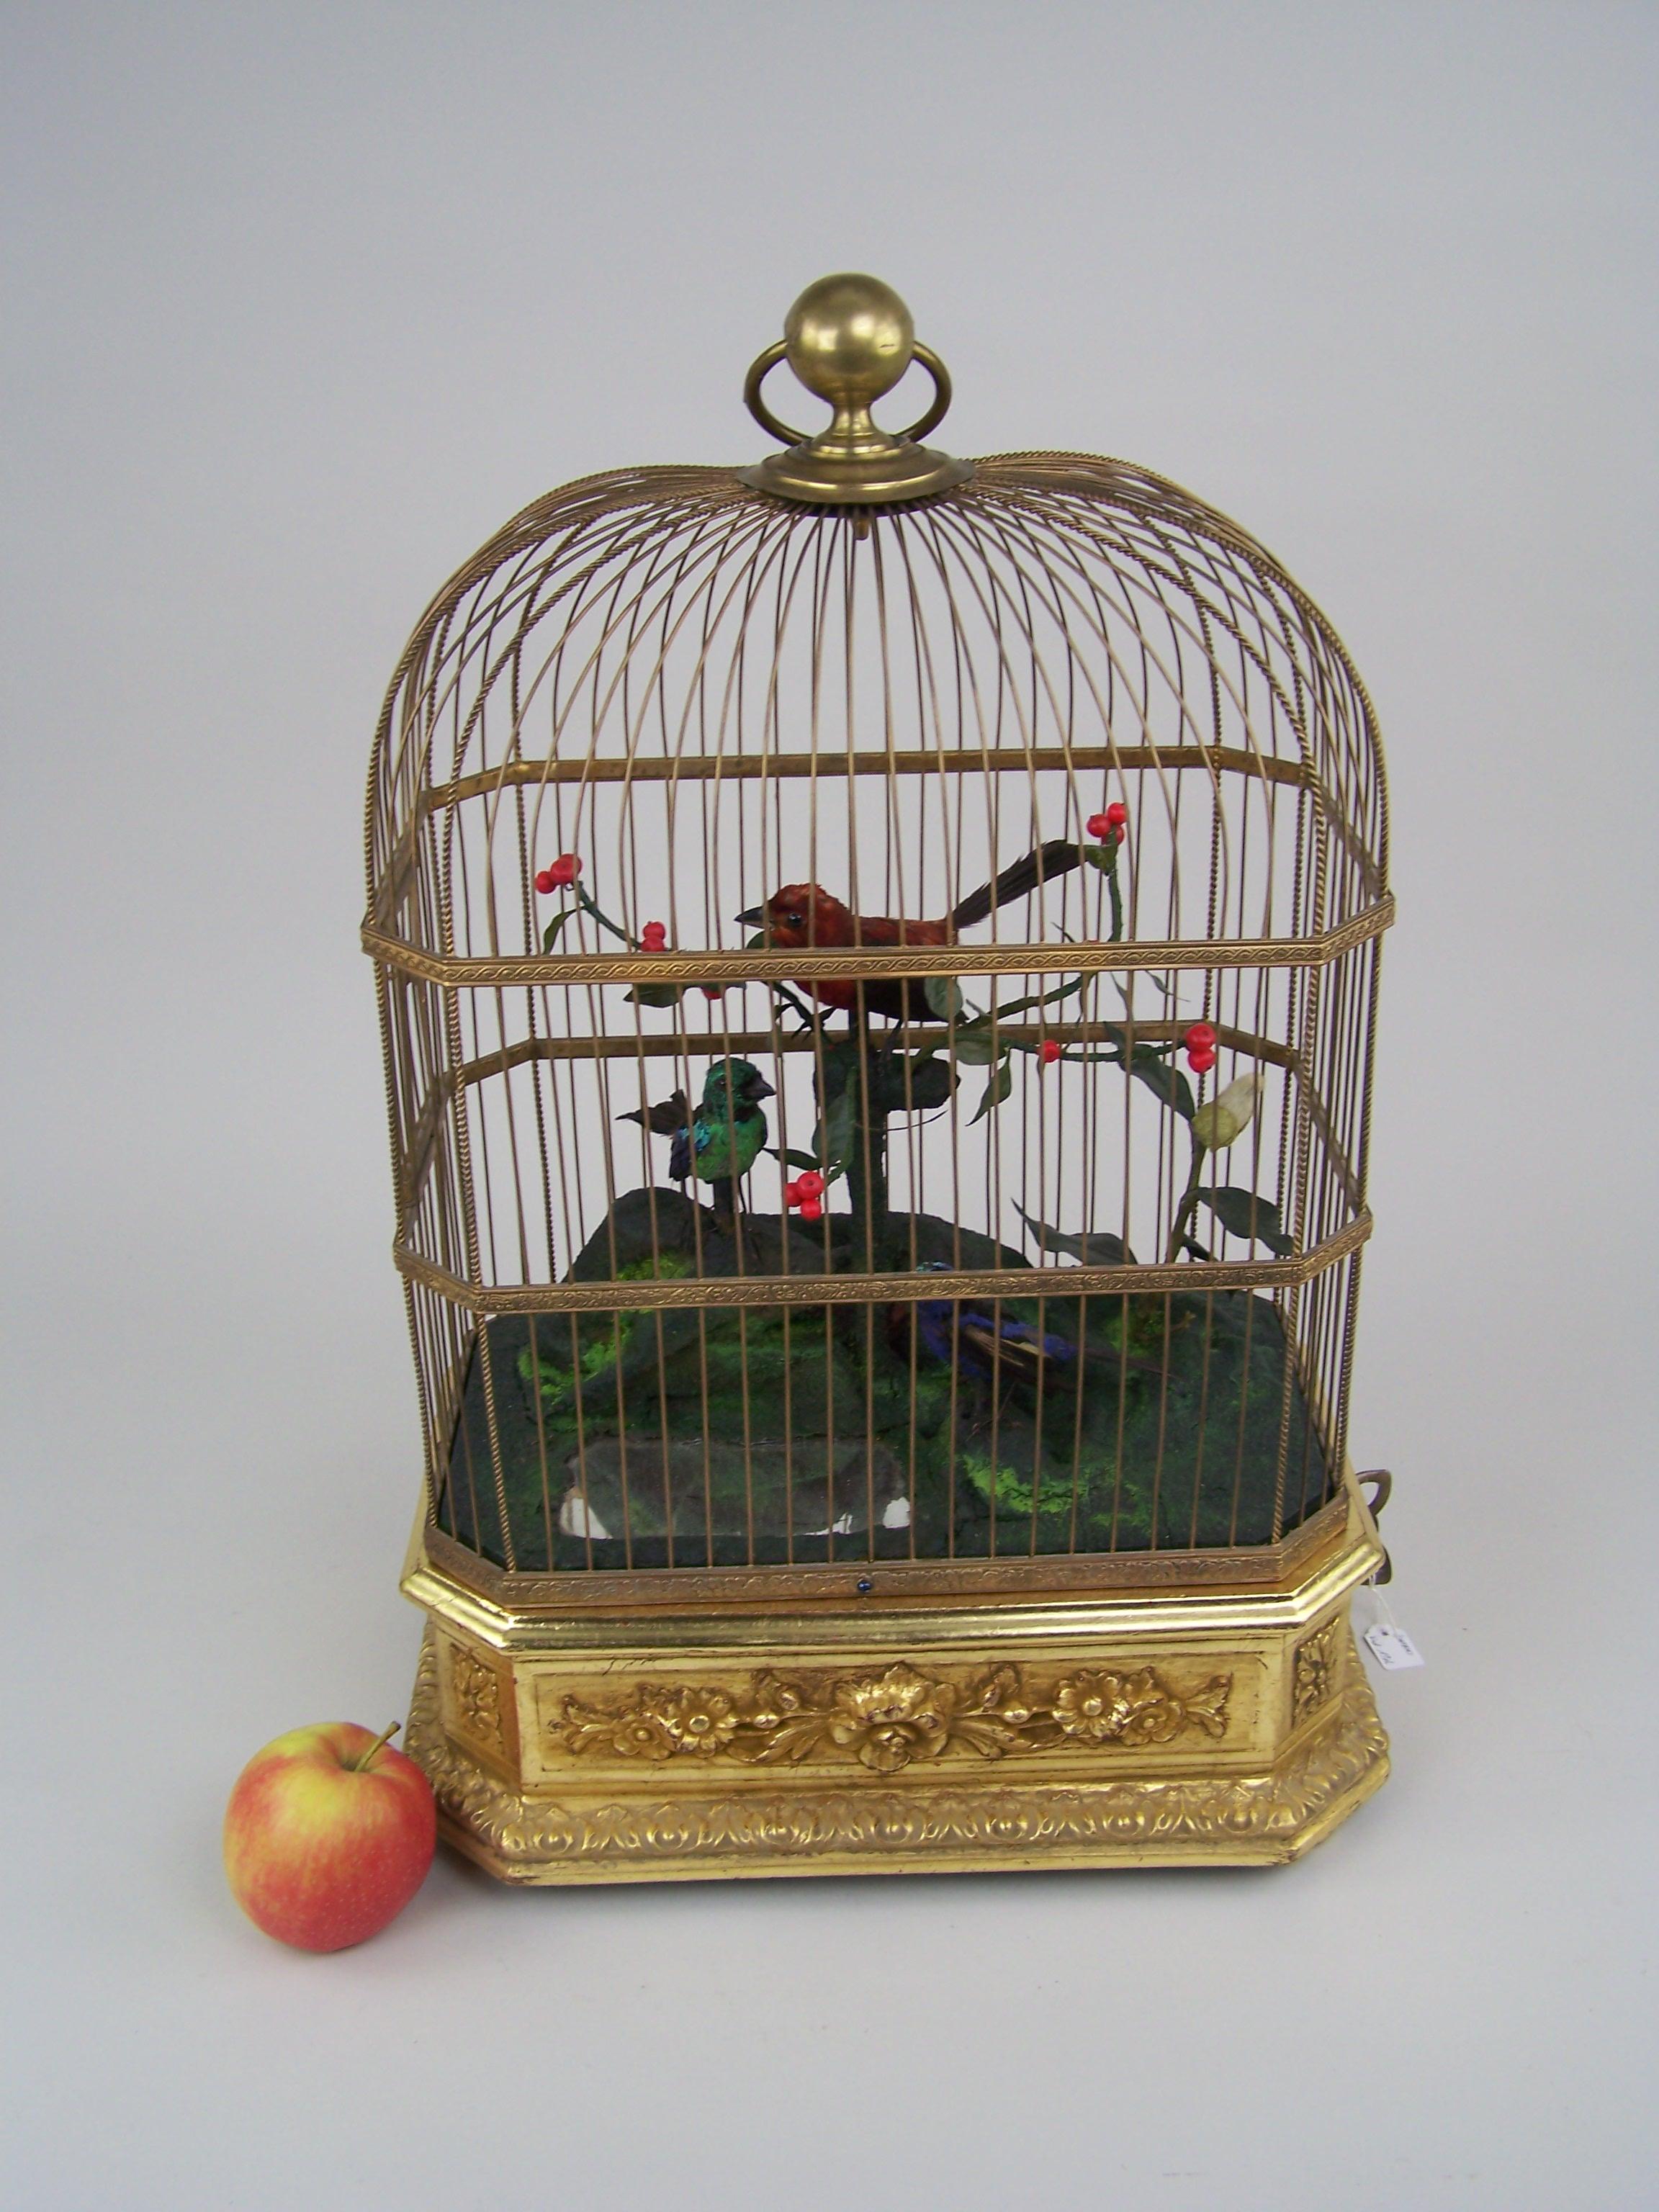 Seltener und sehr dekorativer Singvogel-Automat.

Hergestellt im 4. Quartal des 19. Jahrhunderts von Bontems in Paris (Frankreich).

Dieser hochwertige Singvogel hat einen vergoldeten Holzsockel, um den Mechanismus zu versiegeln. In dem Käfig